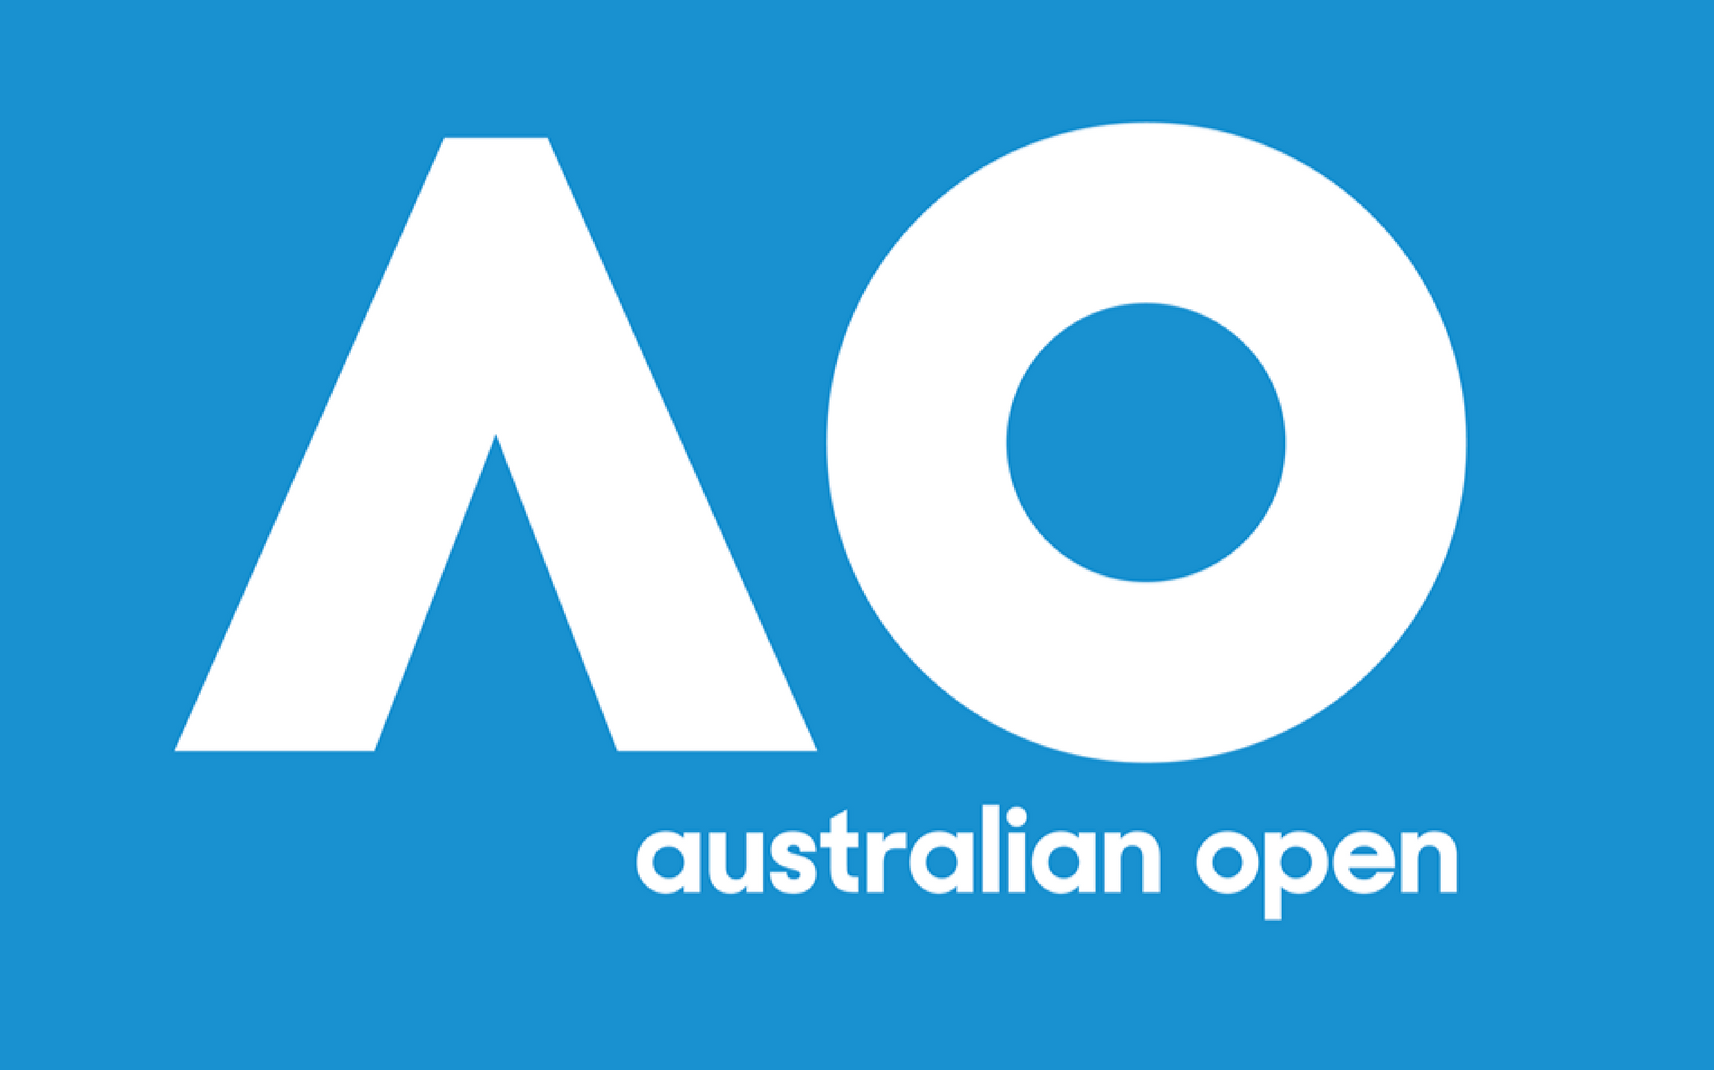 australian open messenger bots